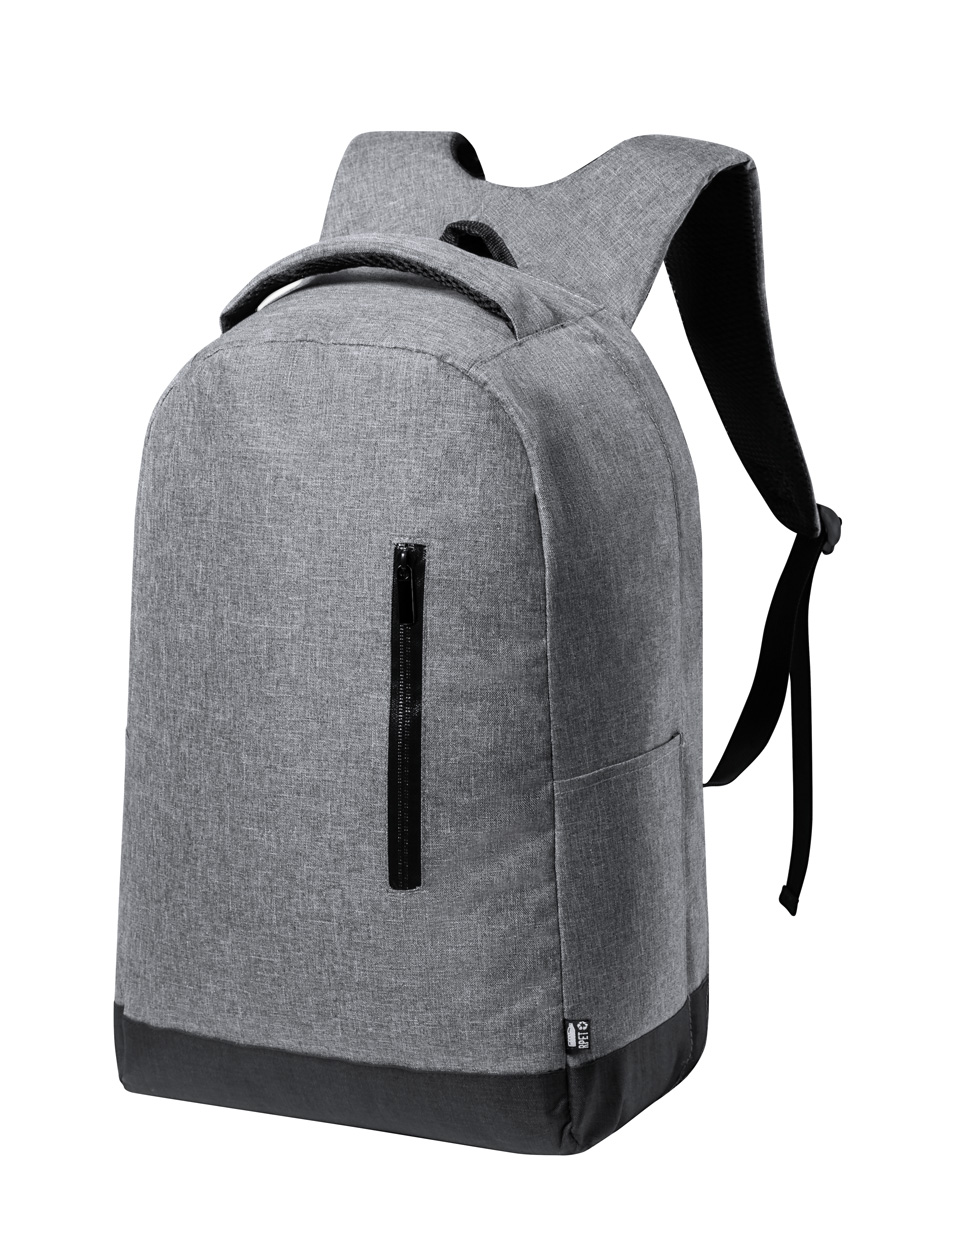 Bulman RPET backpack - grey